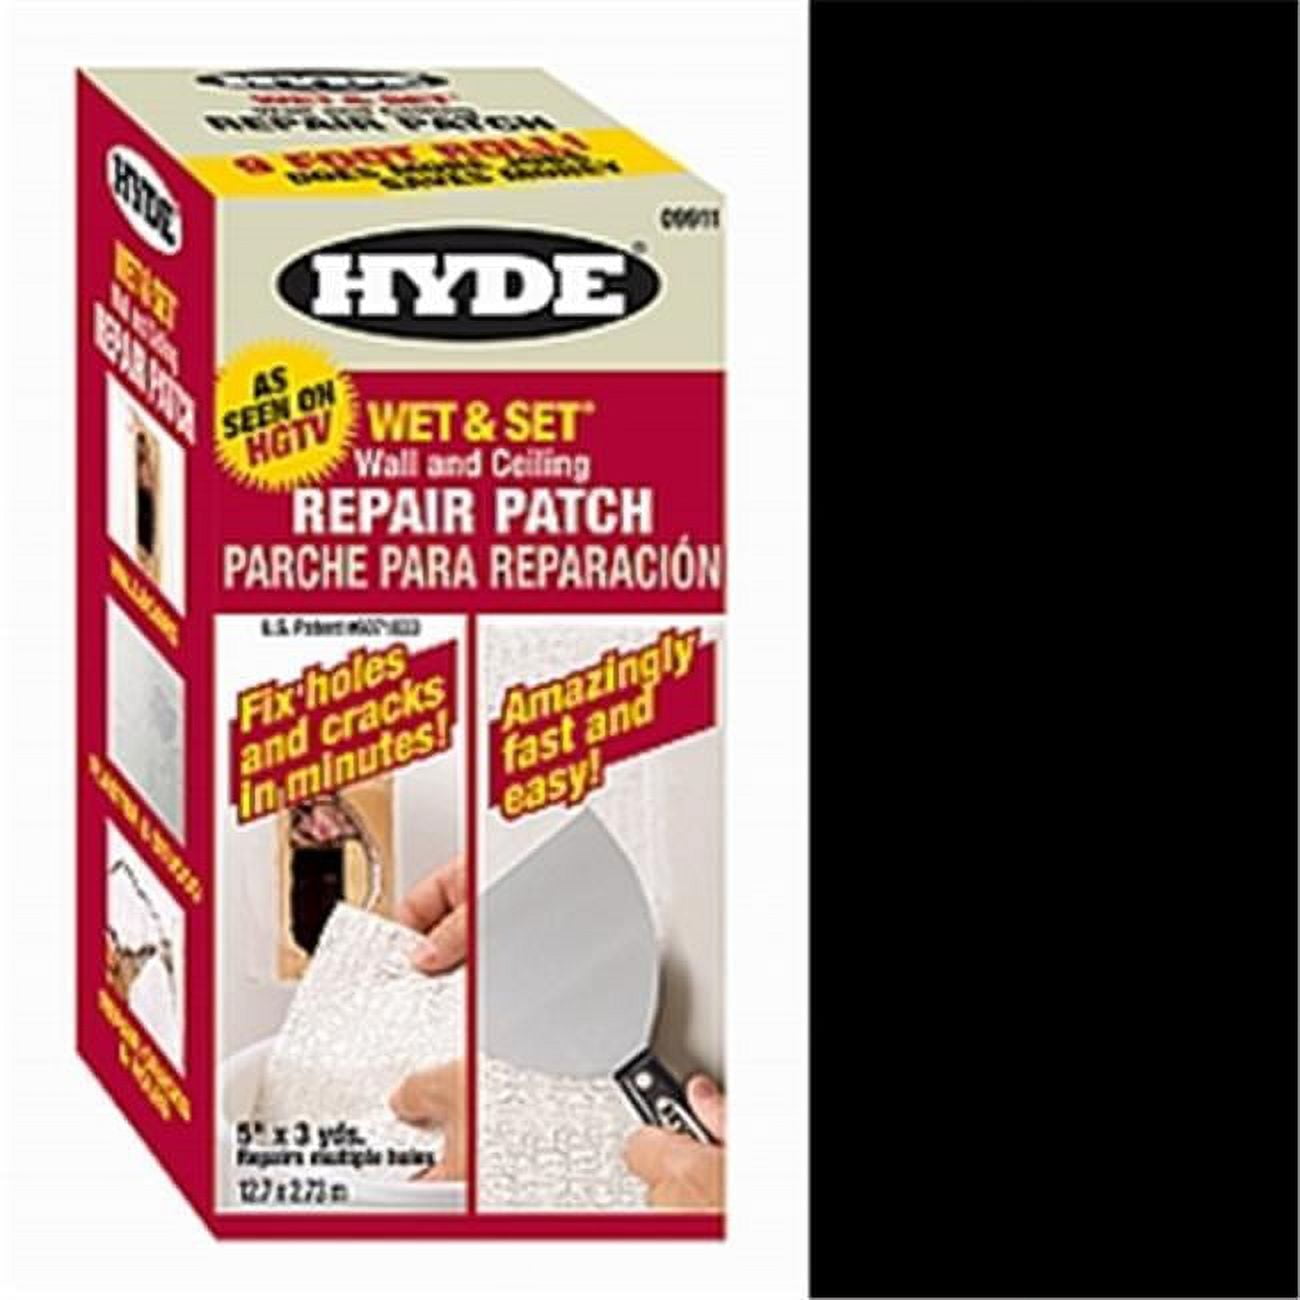 Hyde Better Finish Wall Repair Kit